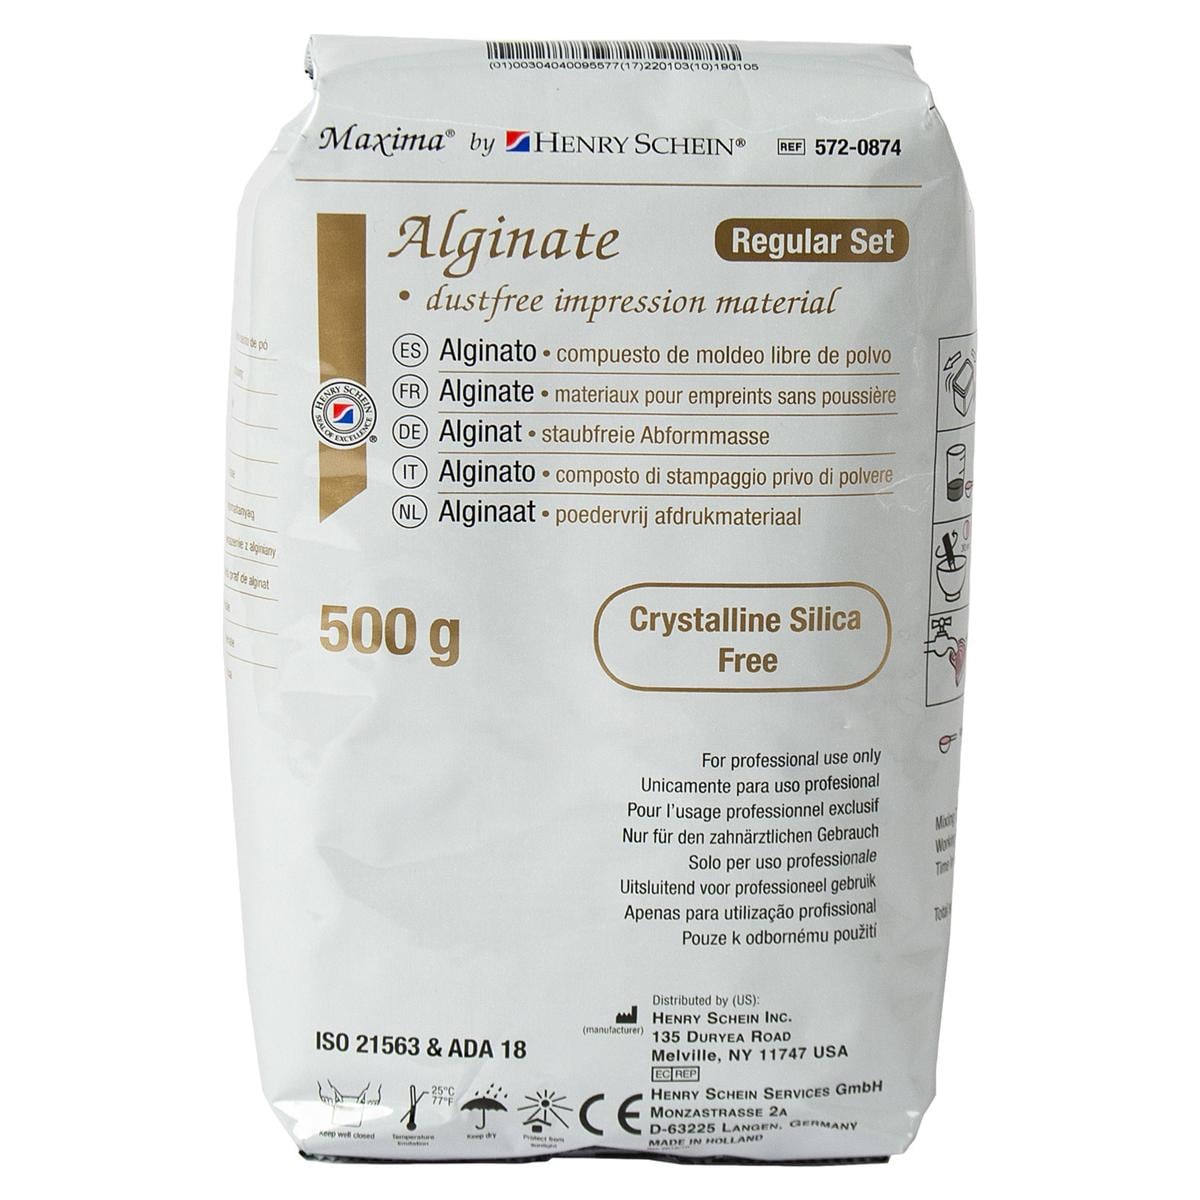 HS-Maxima® Alginat, Alginate Plus - Beutel 500 g